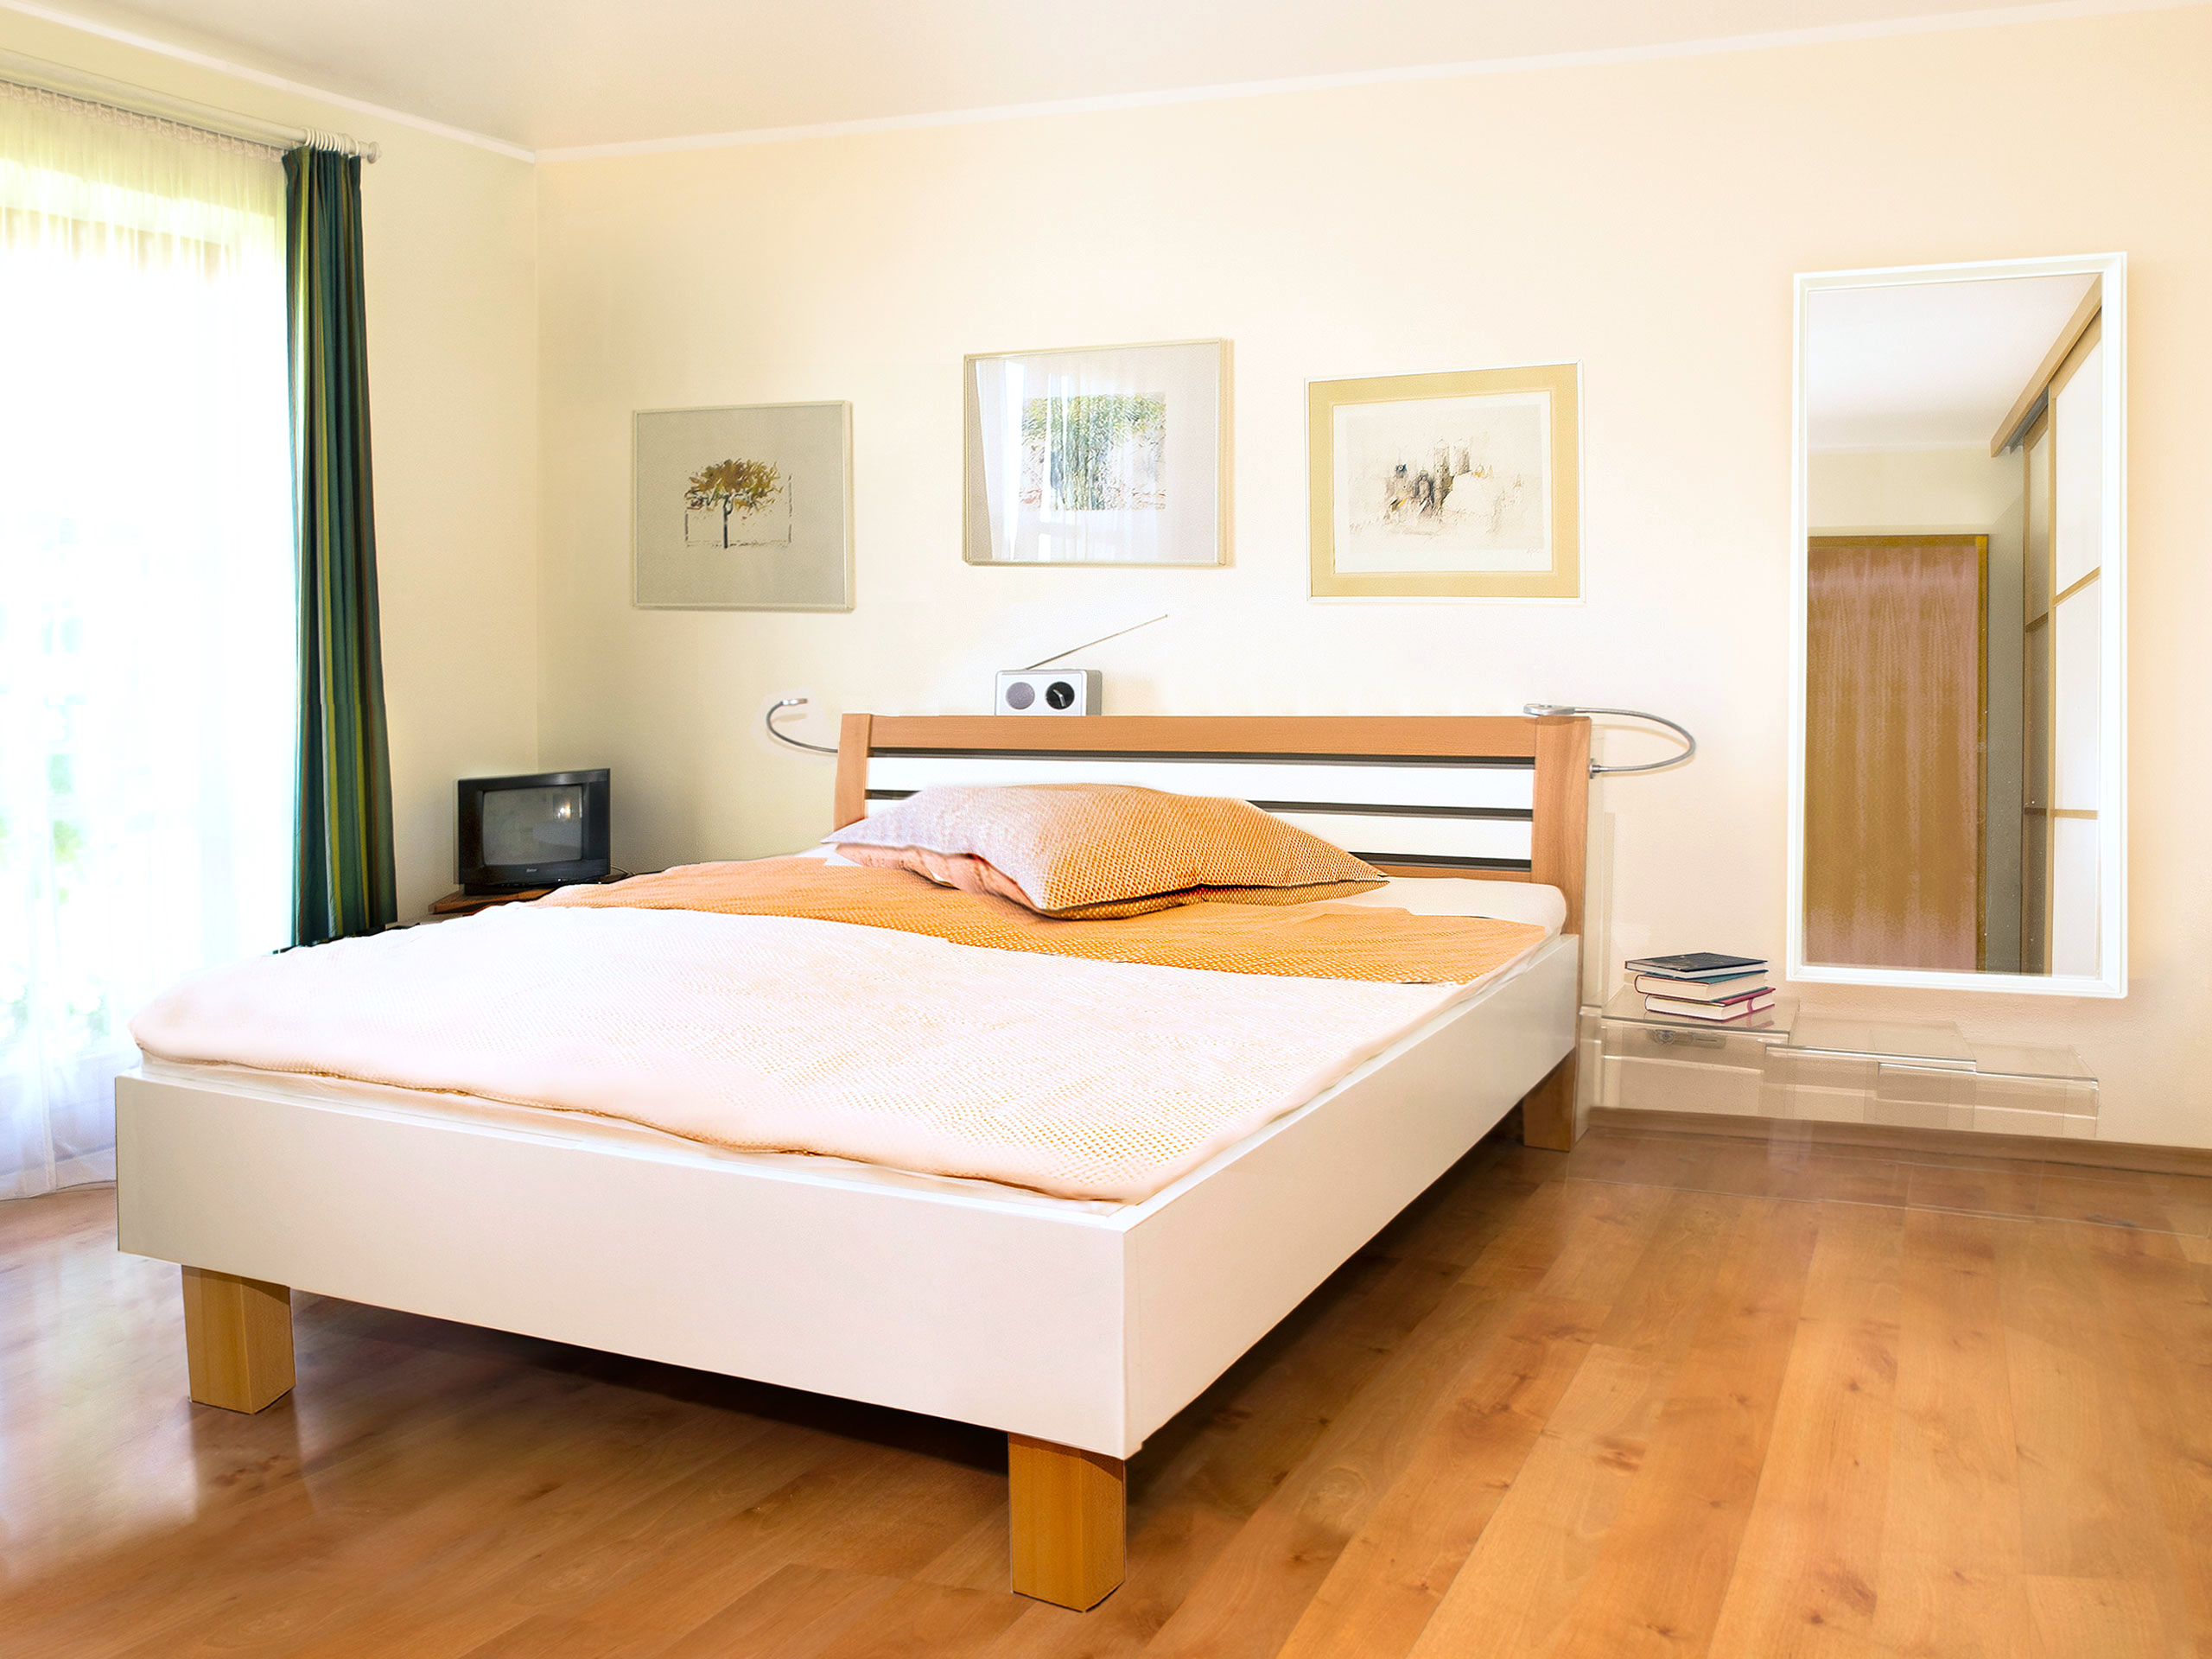 Doppelbett in Kombination aus Weiß und holz mit eckigen Holzfüßen